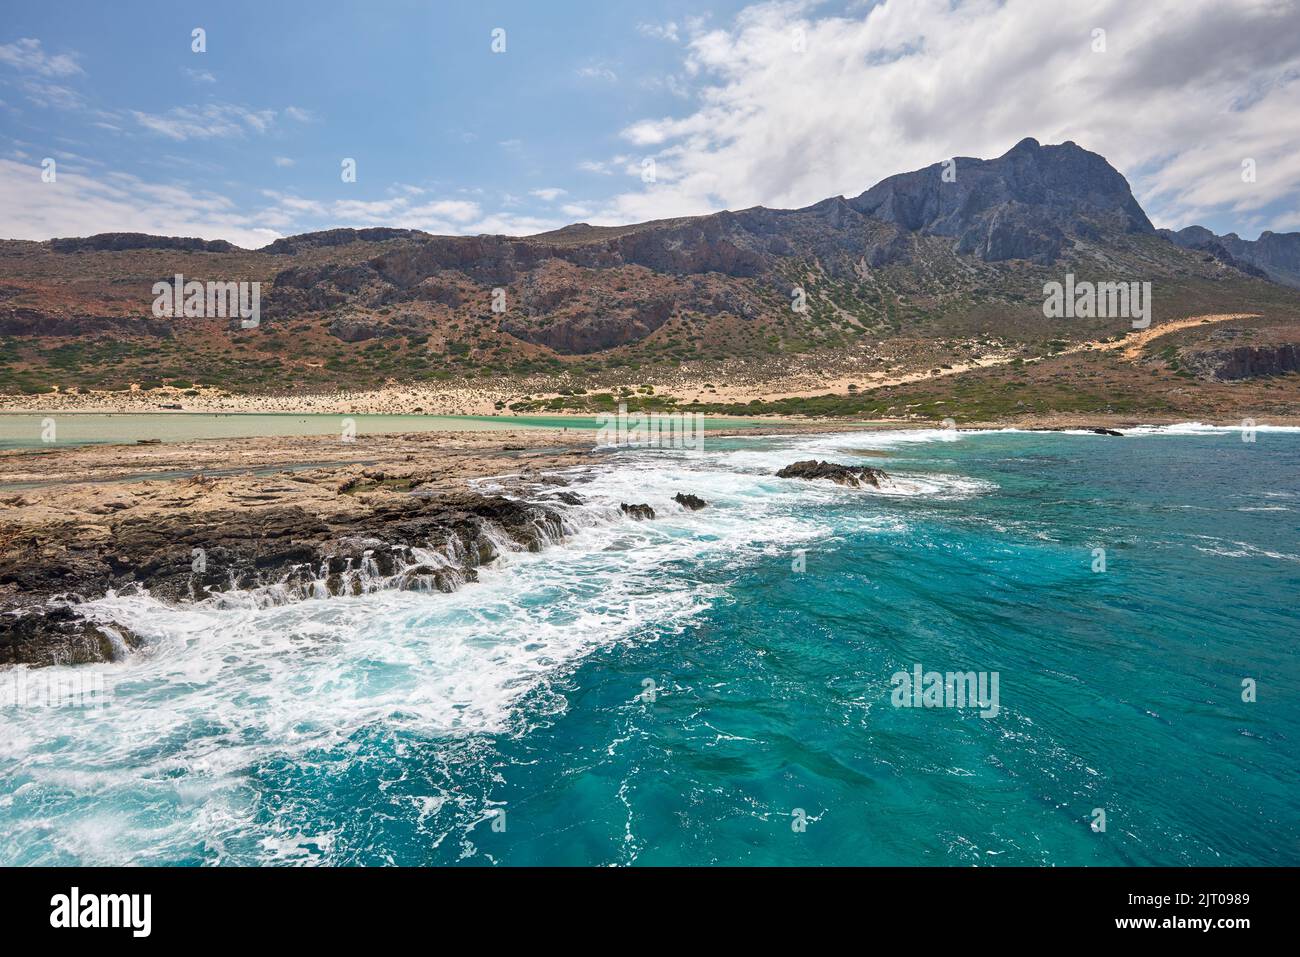 Increíble paisaje de las islas griegas - Bahía de Balos con las mejores playas y mar turquesa. Isla de Creta Foto de stock